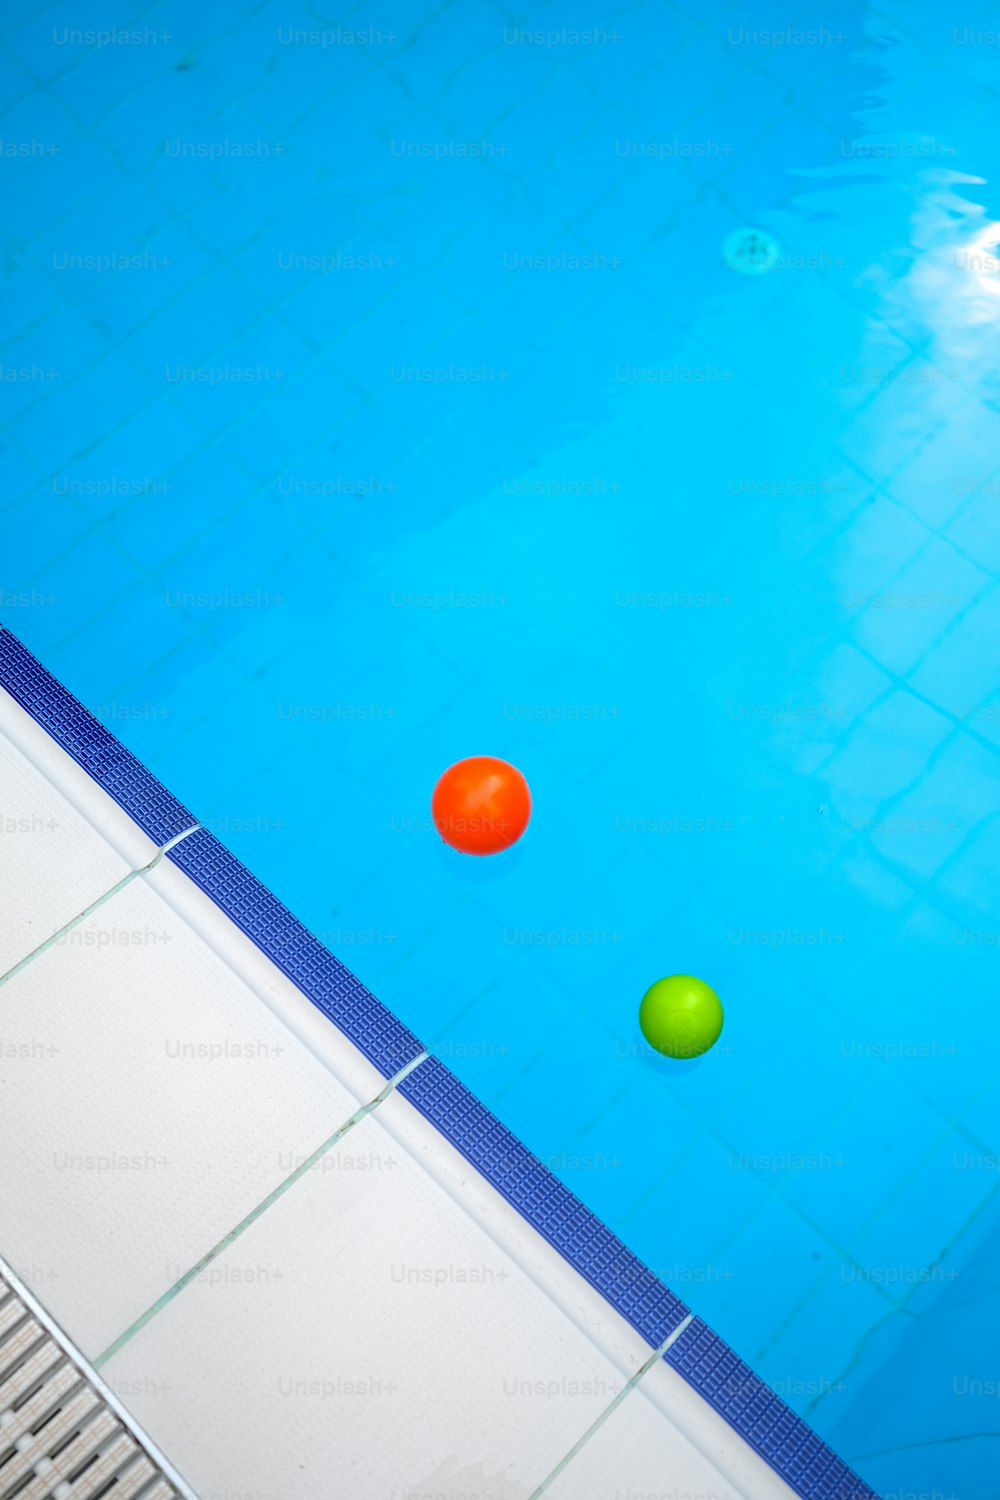 수영장에 떠 있는 세 개의 공